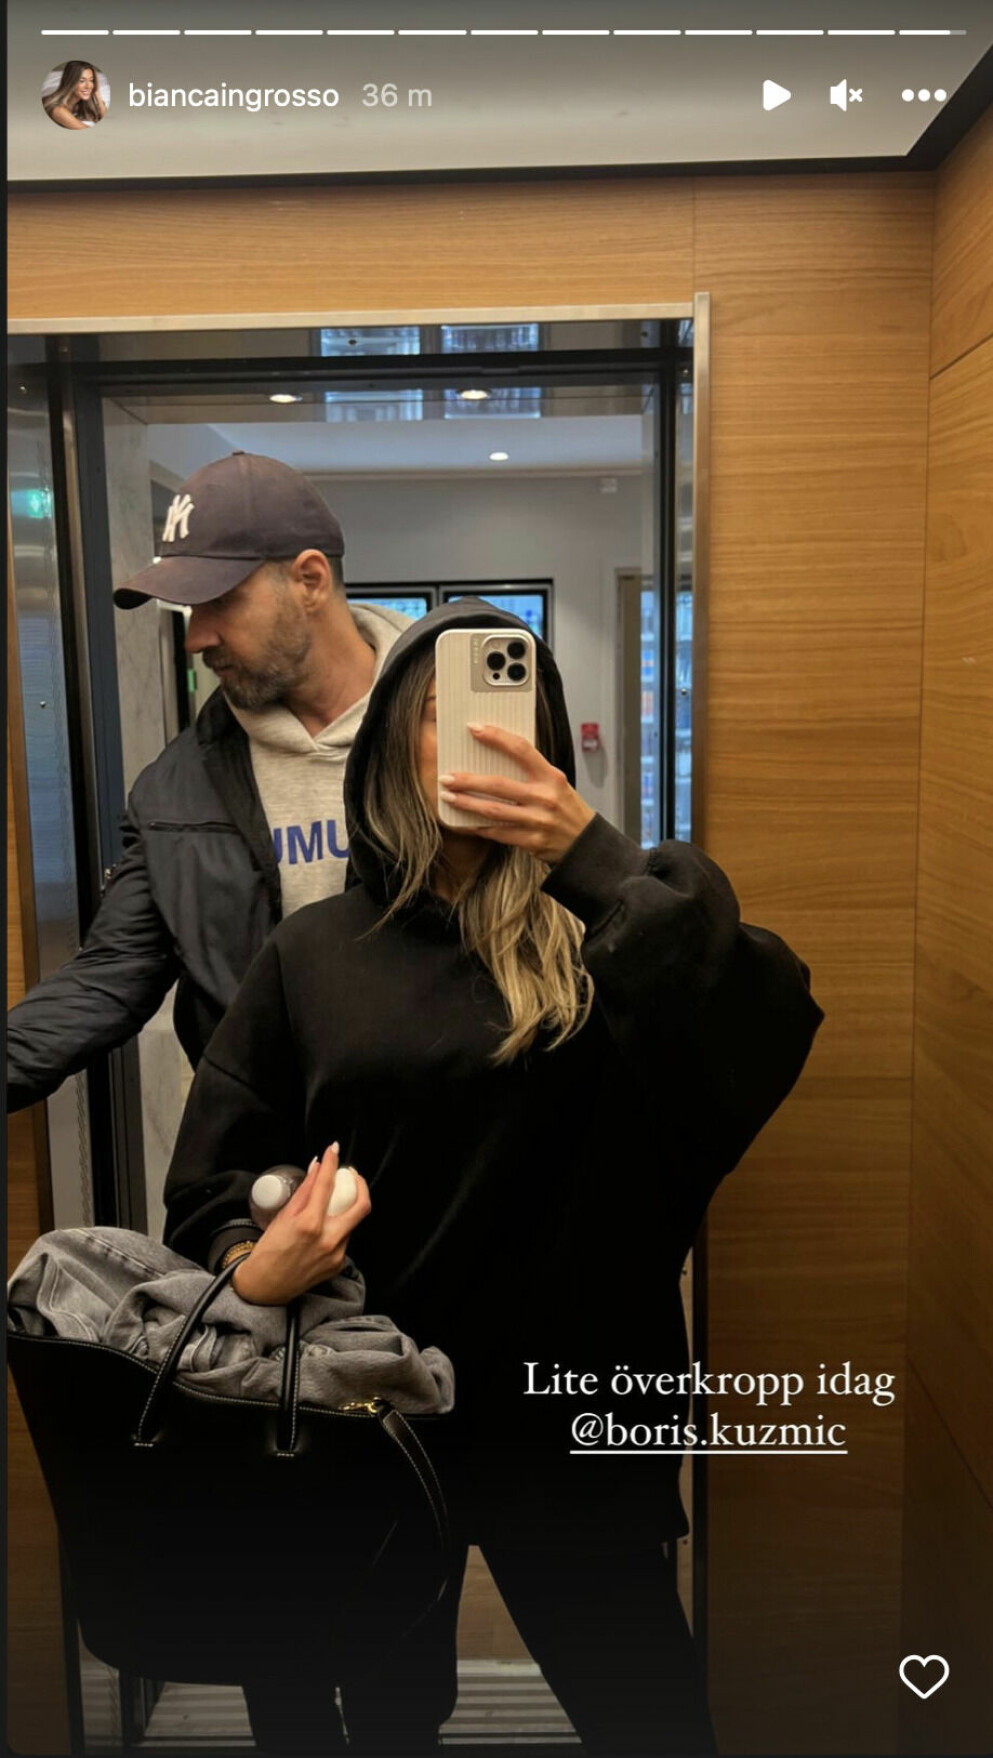 Bianca Ingrosso med PT:n i en hiss.